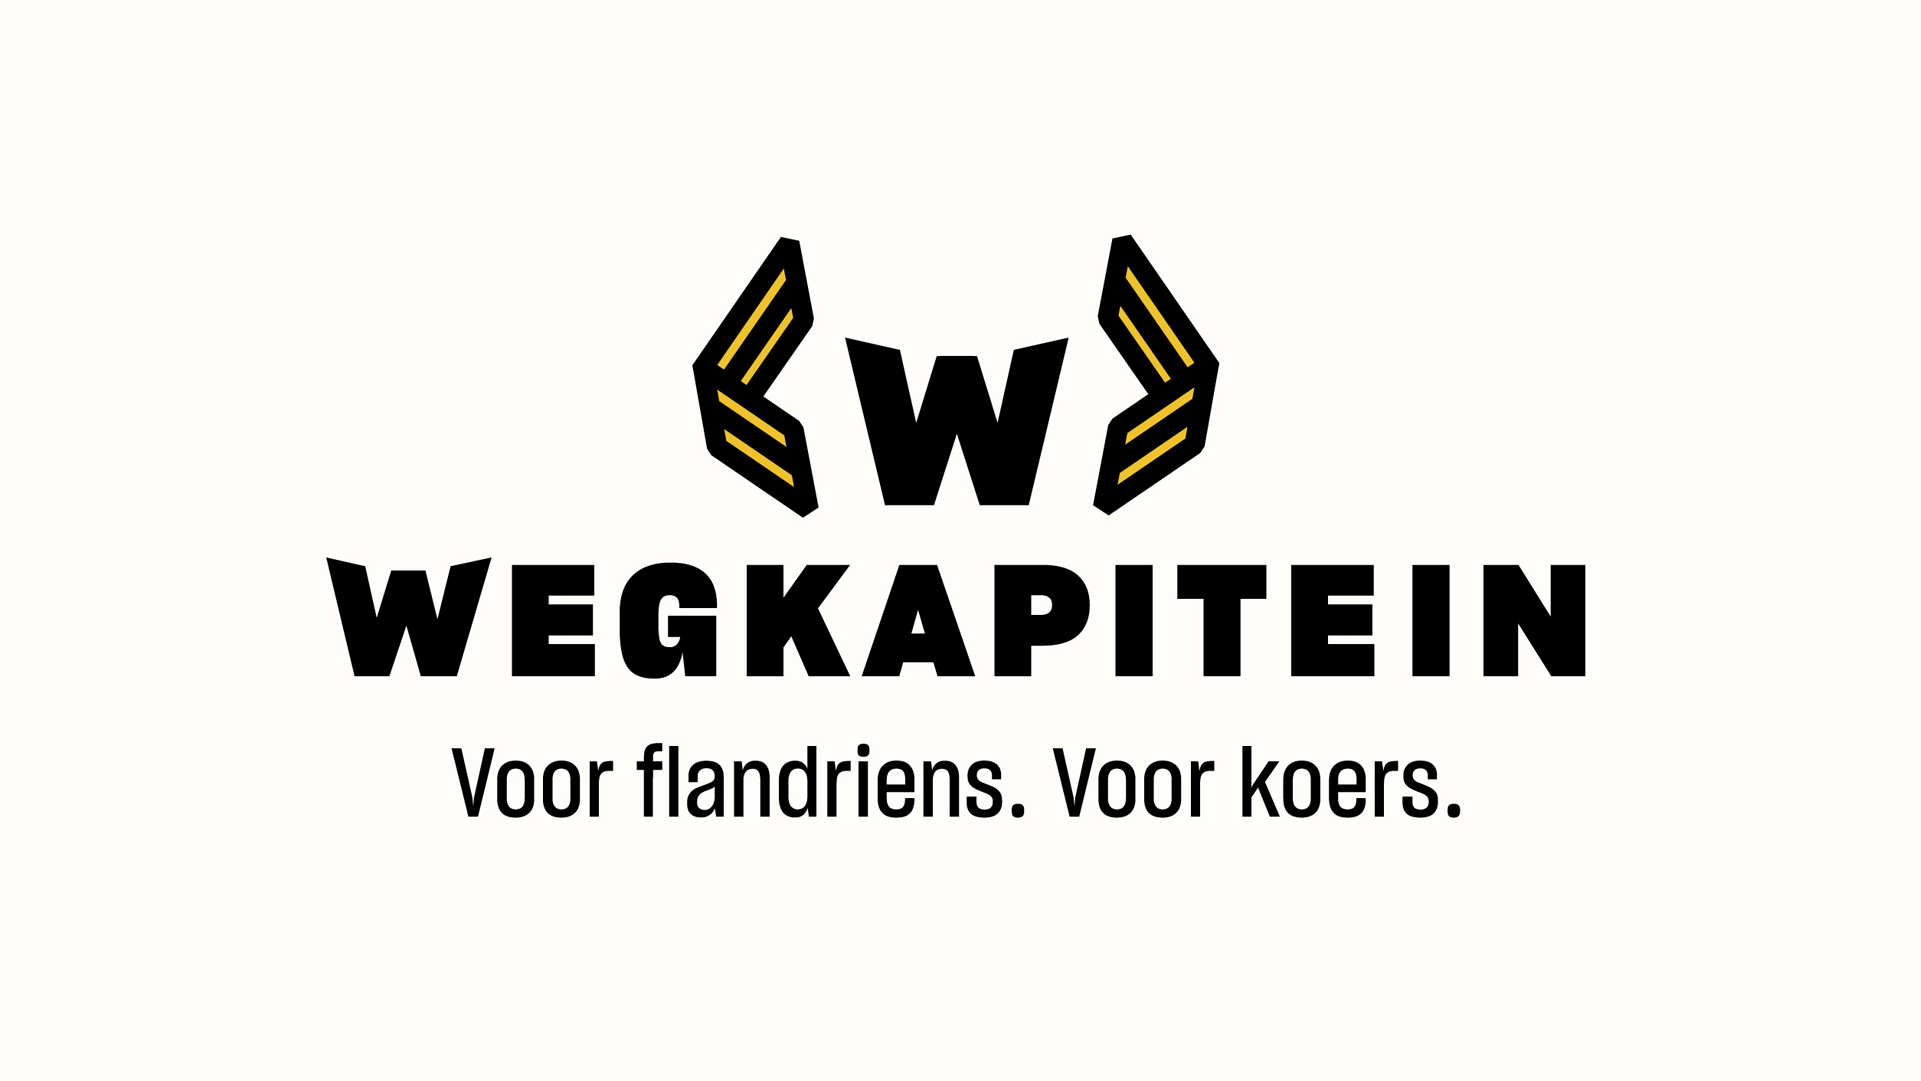 Wegkapitein's logo and wordmark with the baseline underneath